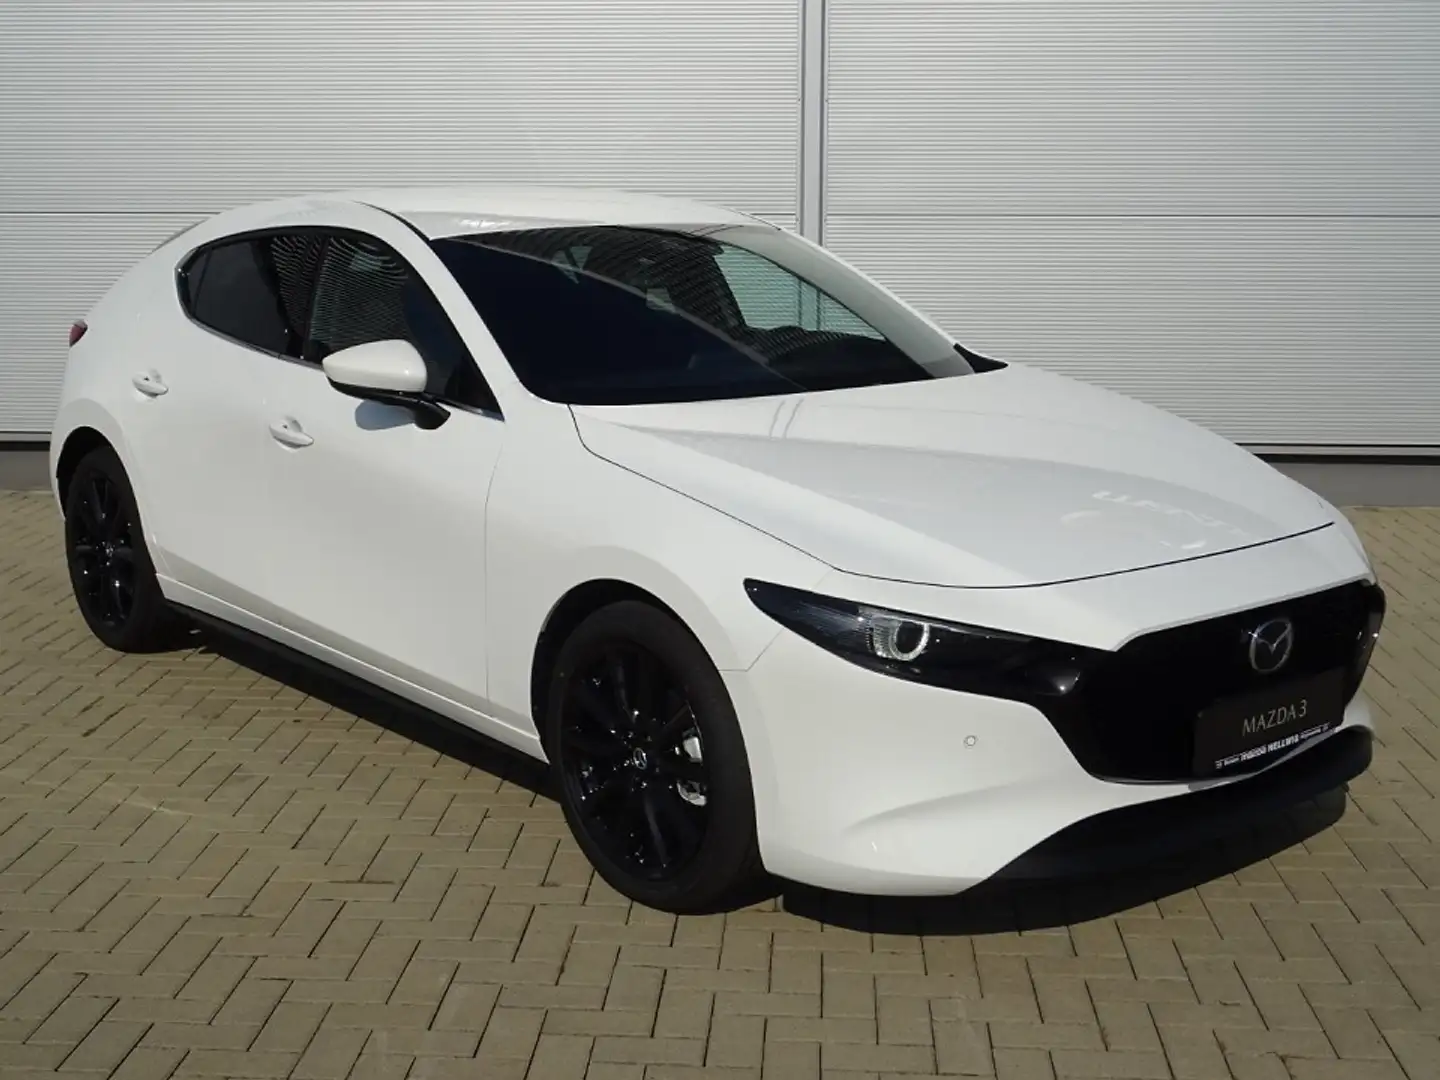 Mazda 3 Limousine in Weiß neu in Hoyerswerda für € 28.280,-